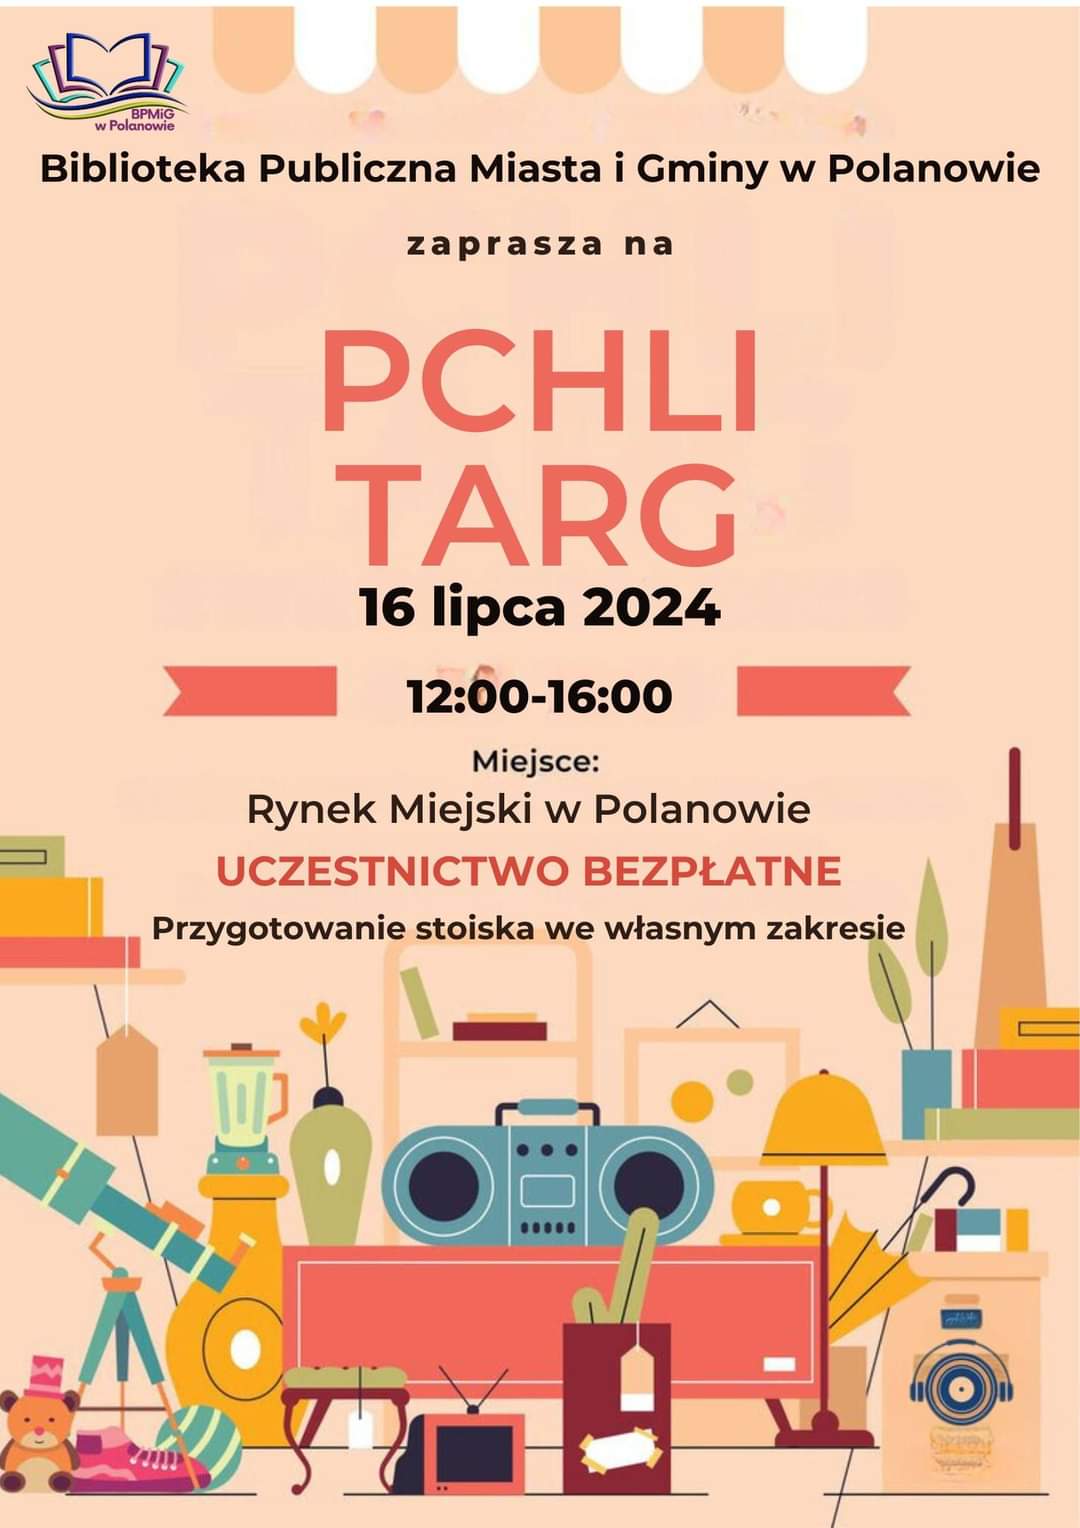 Plakat z zaproszeniem na pchli targ w Polanowie 16 lipca 2024